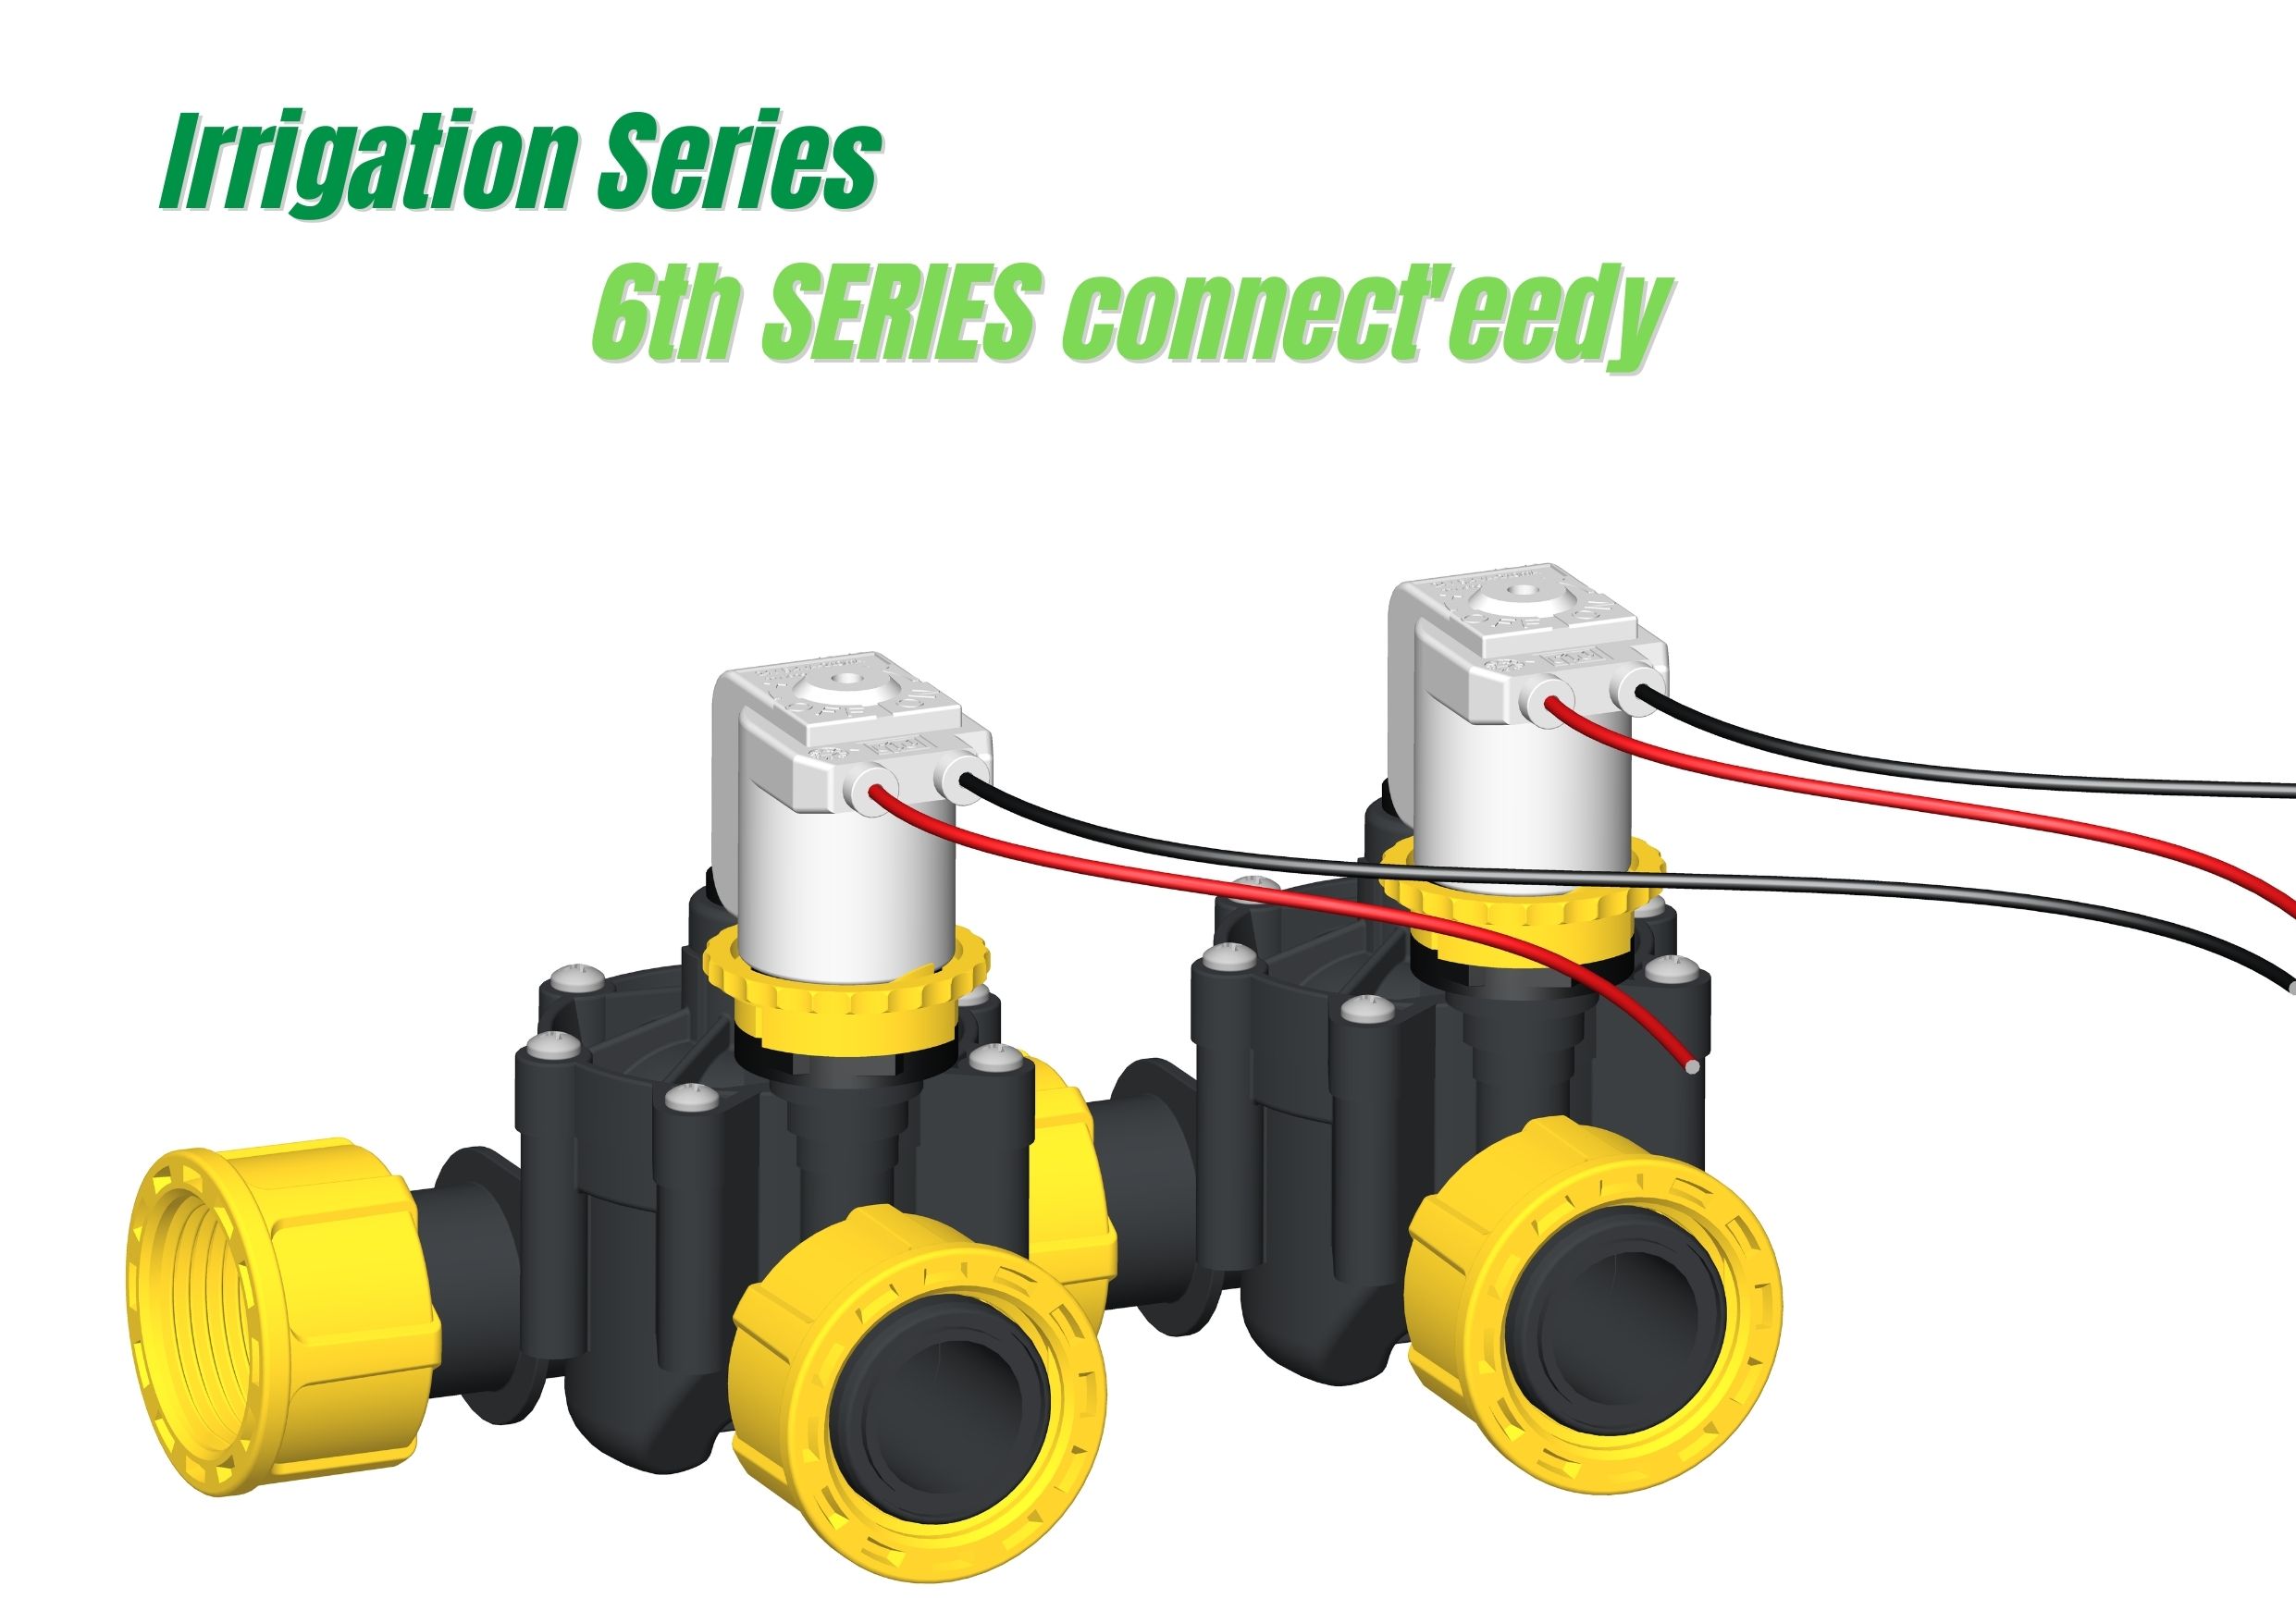 Scopri la 6ª Serie Connect'eedy - la nuova elettrovalvola modulare RPE per l'irrigazione 